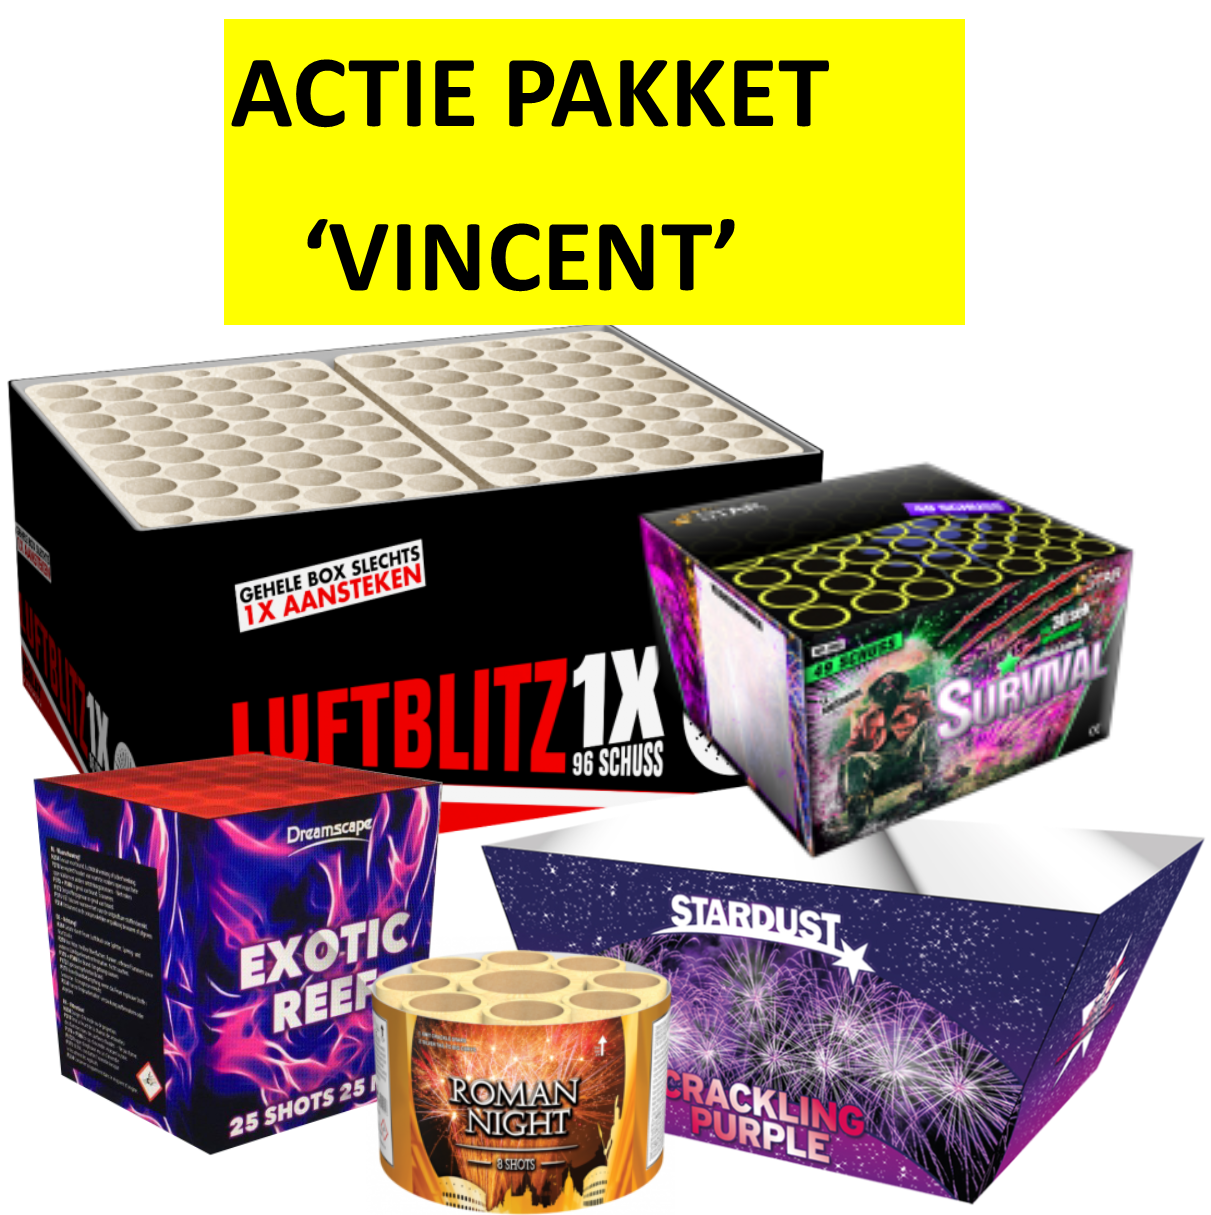 Actie Pakket Vincent